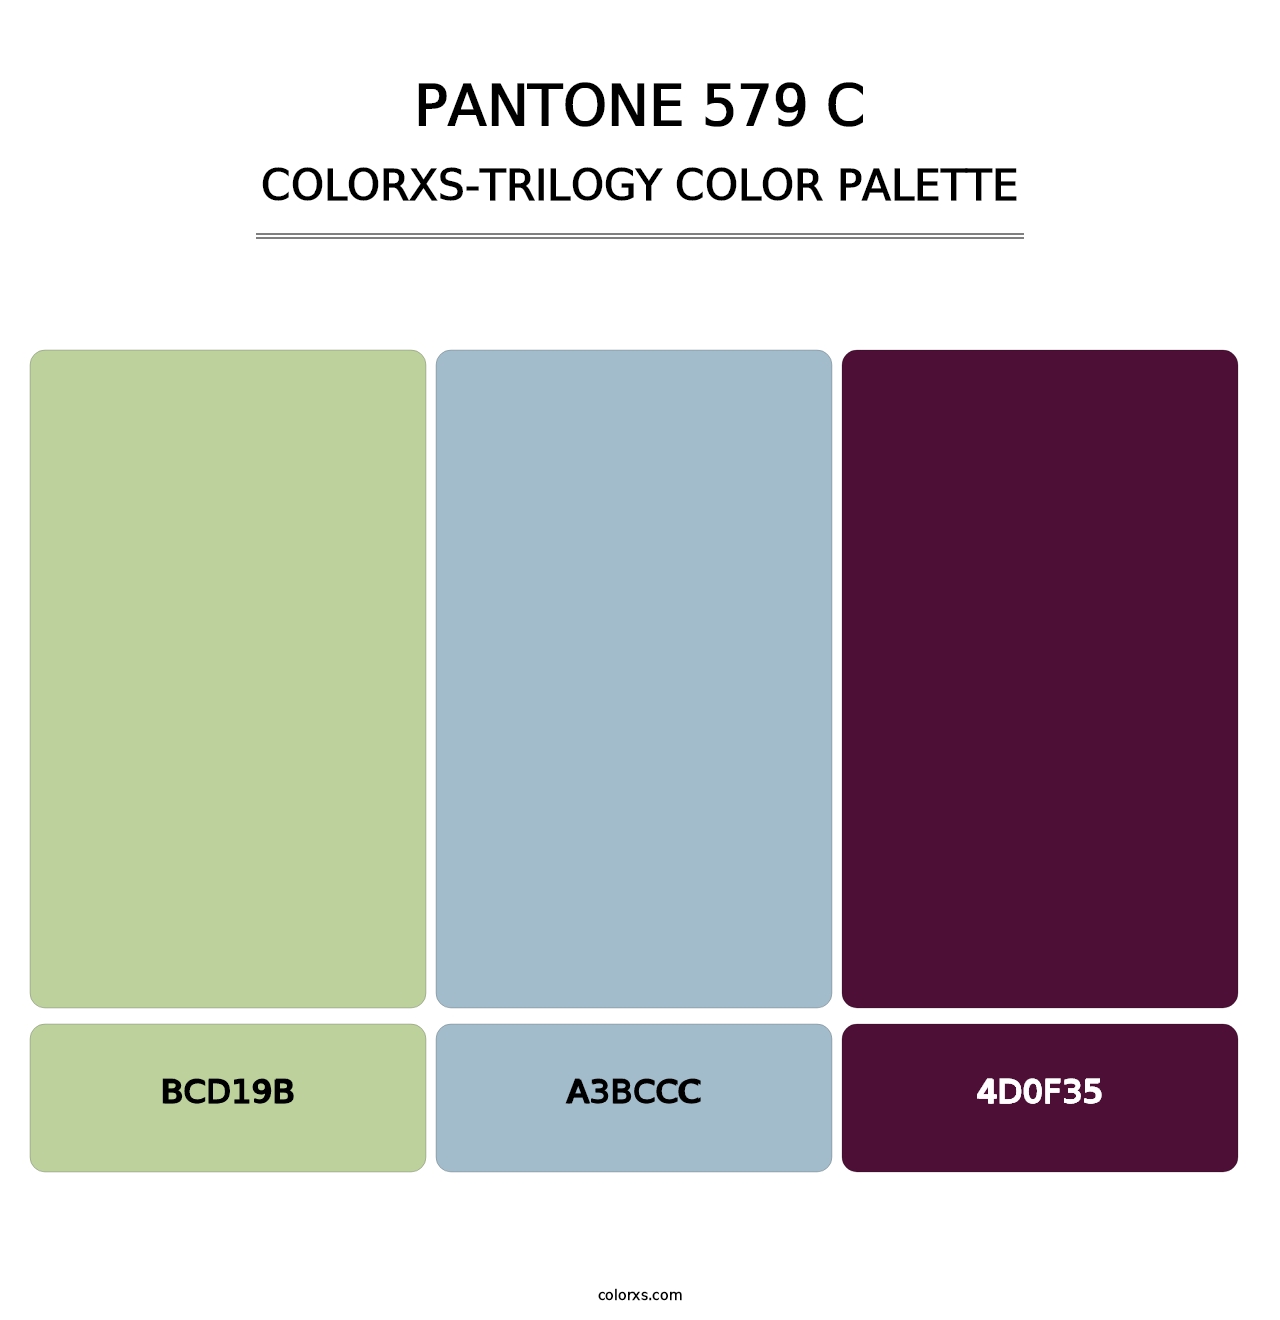 PANTONE 579 C - Colorxs Trilogy Palette